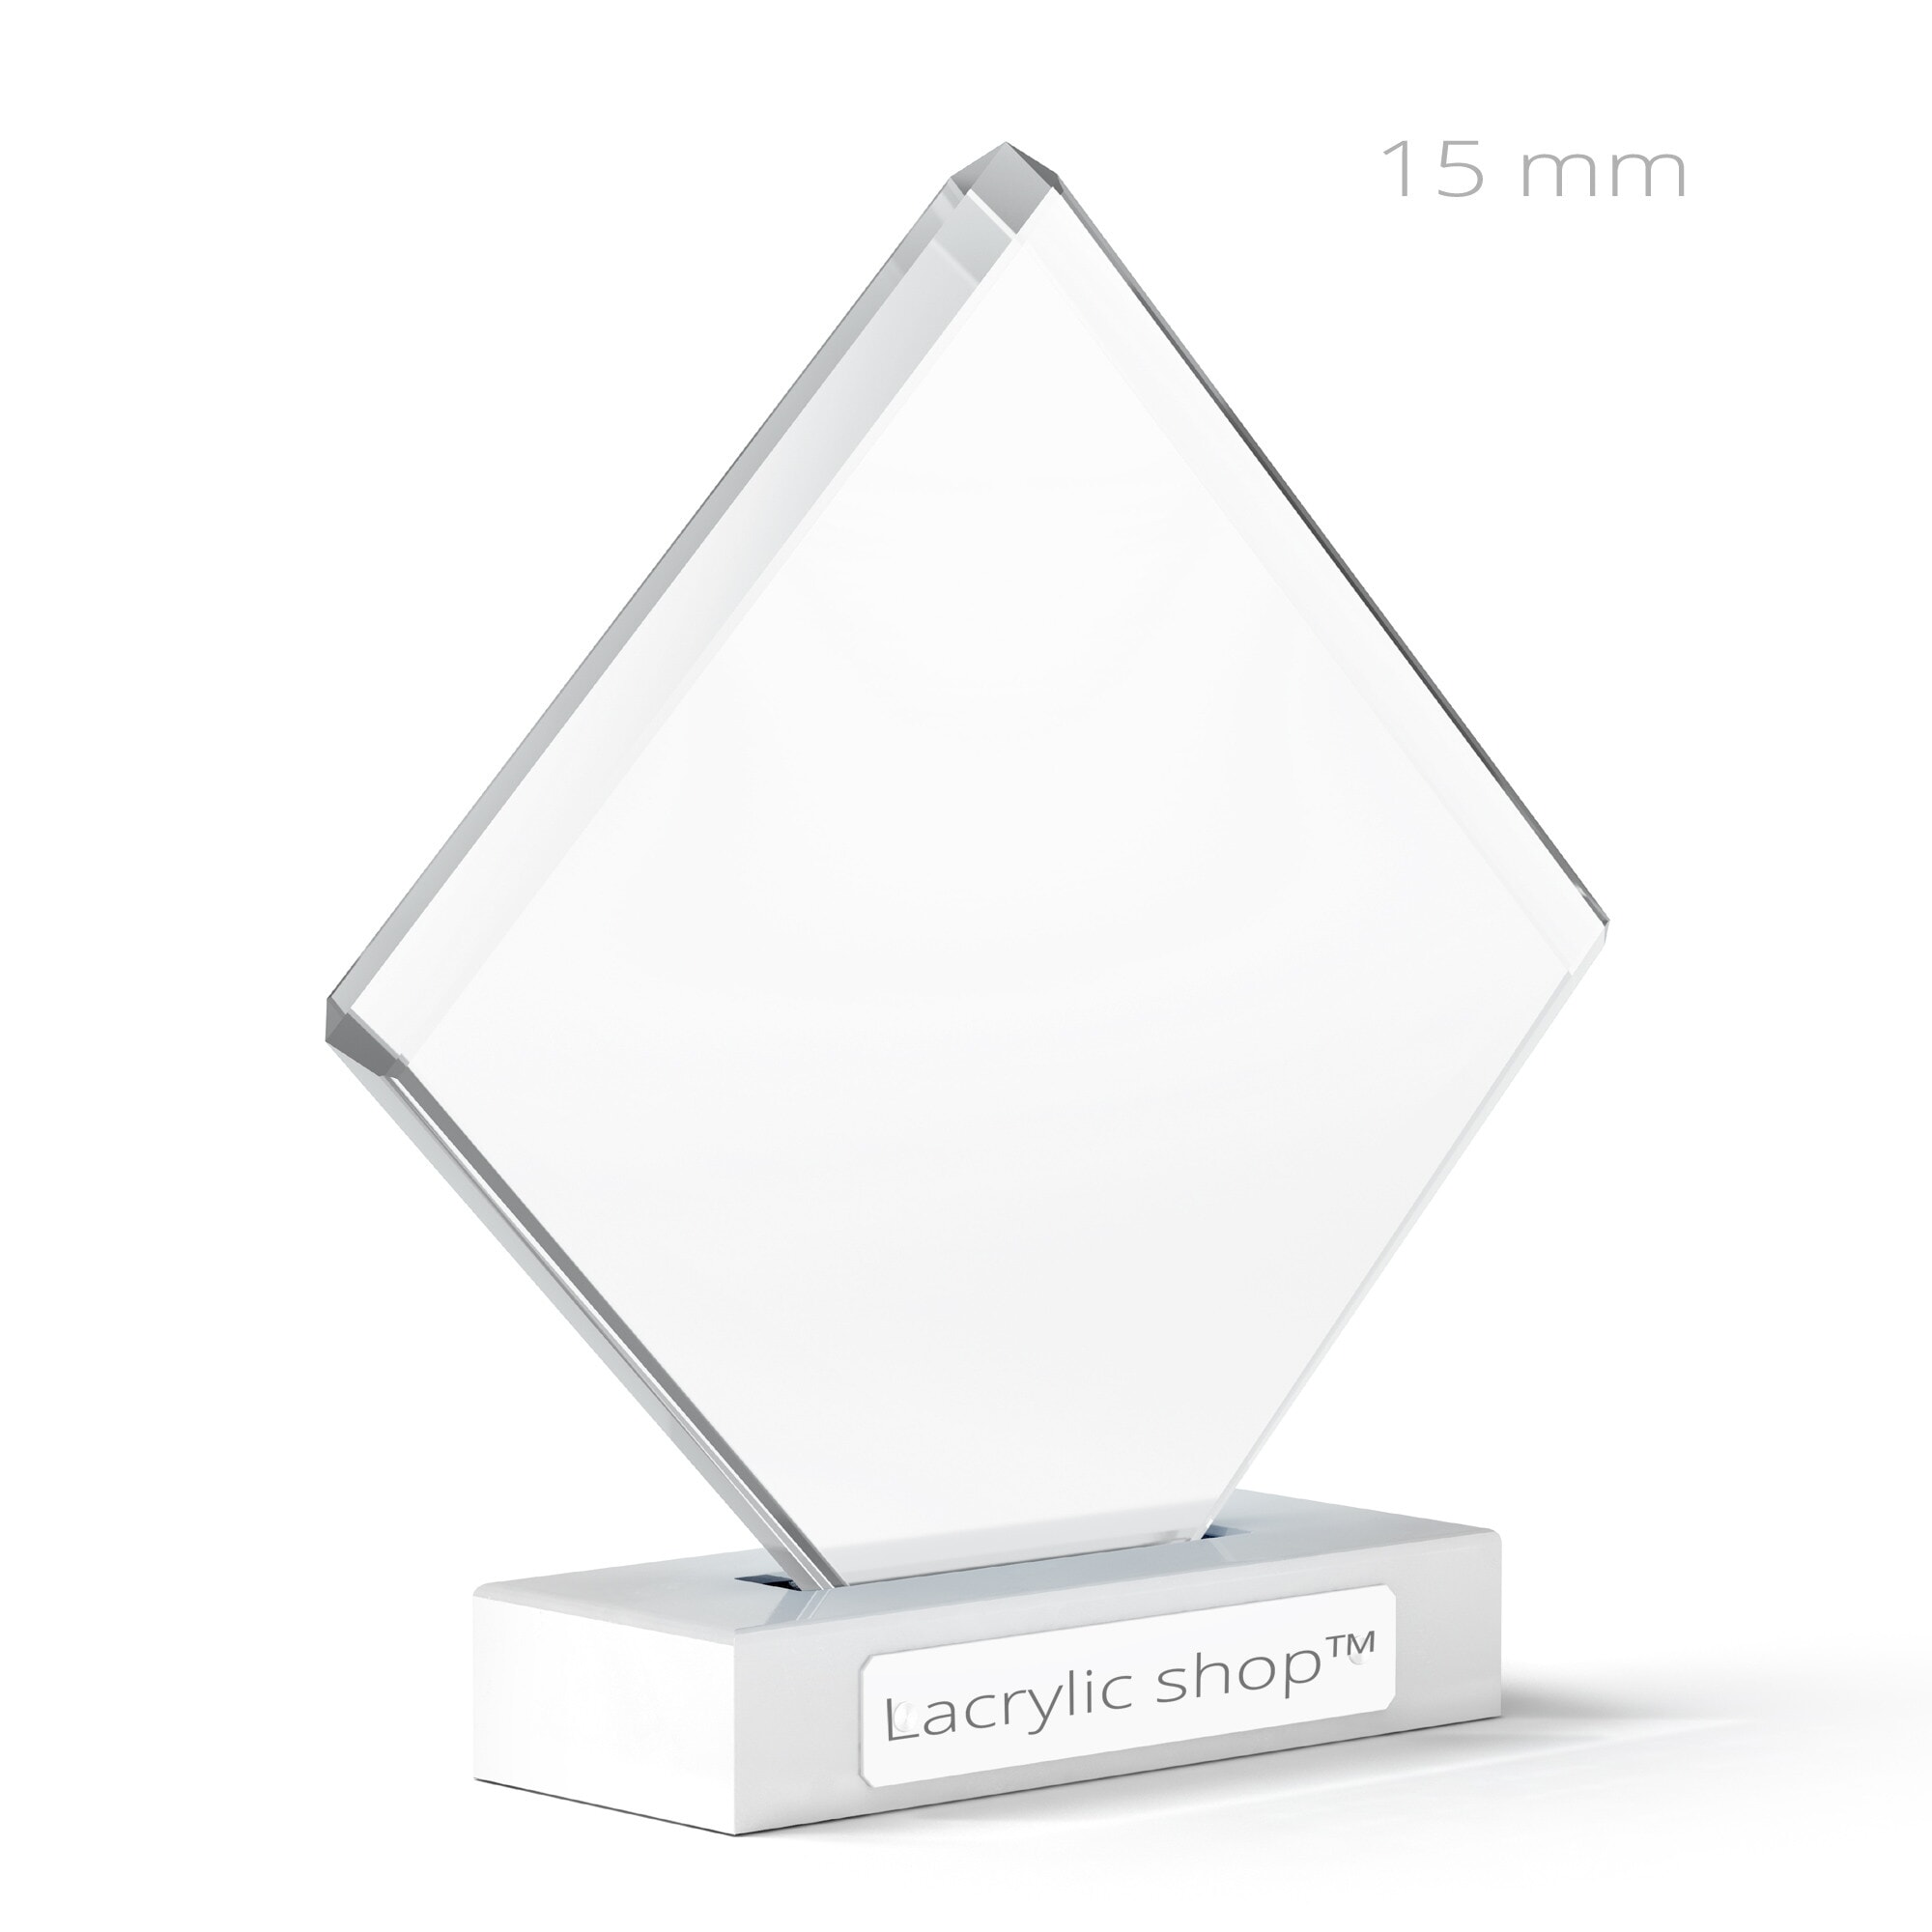 Vitre plexiglass transparent pour cadre - Plexi 1,5 mm PMMA XT Transparent